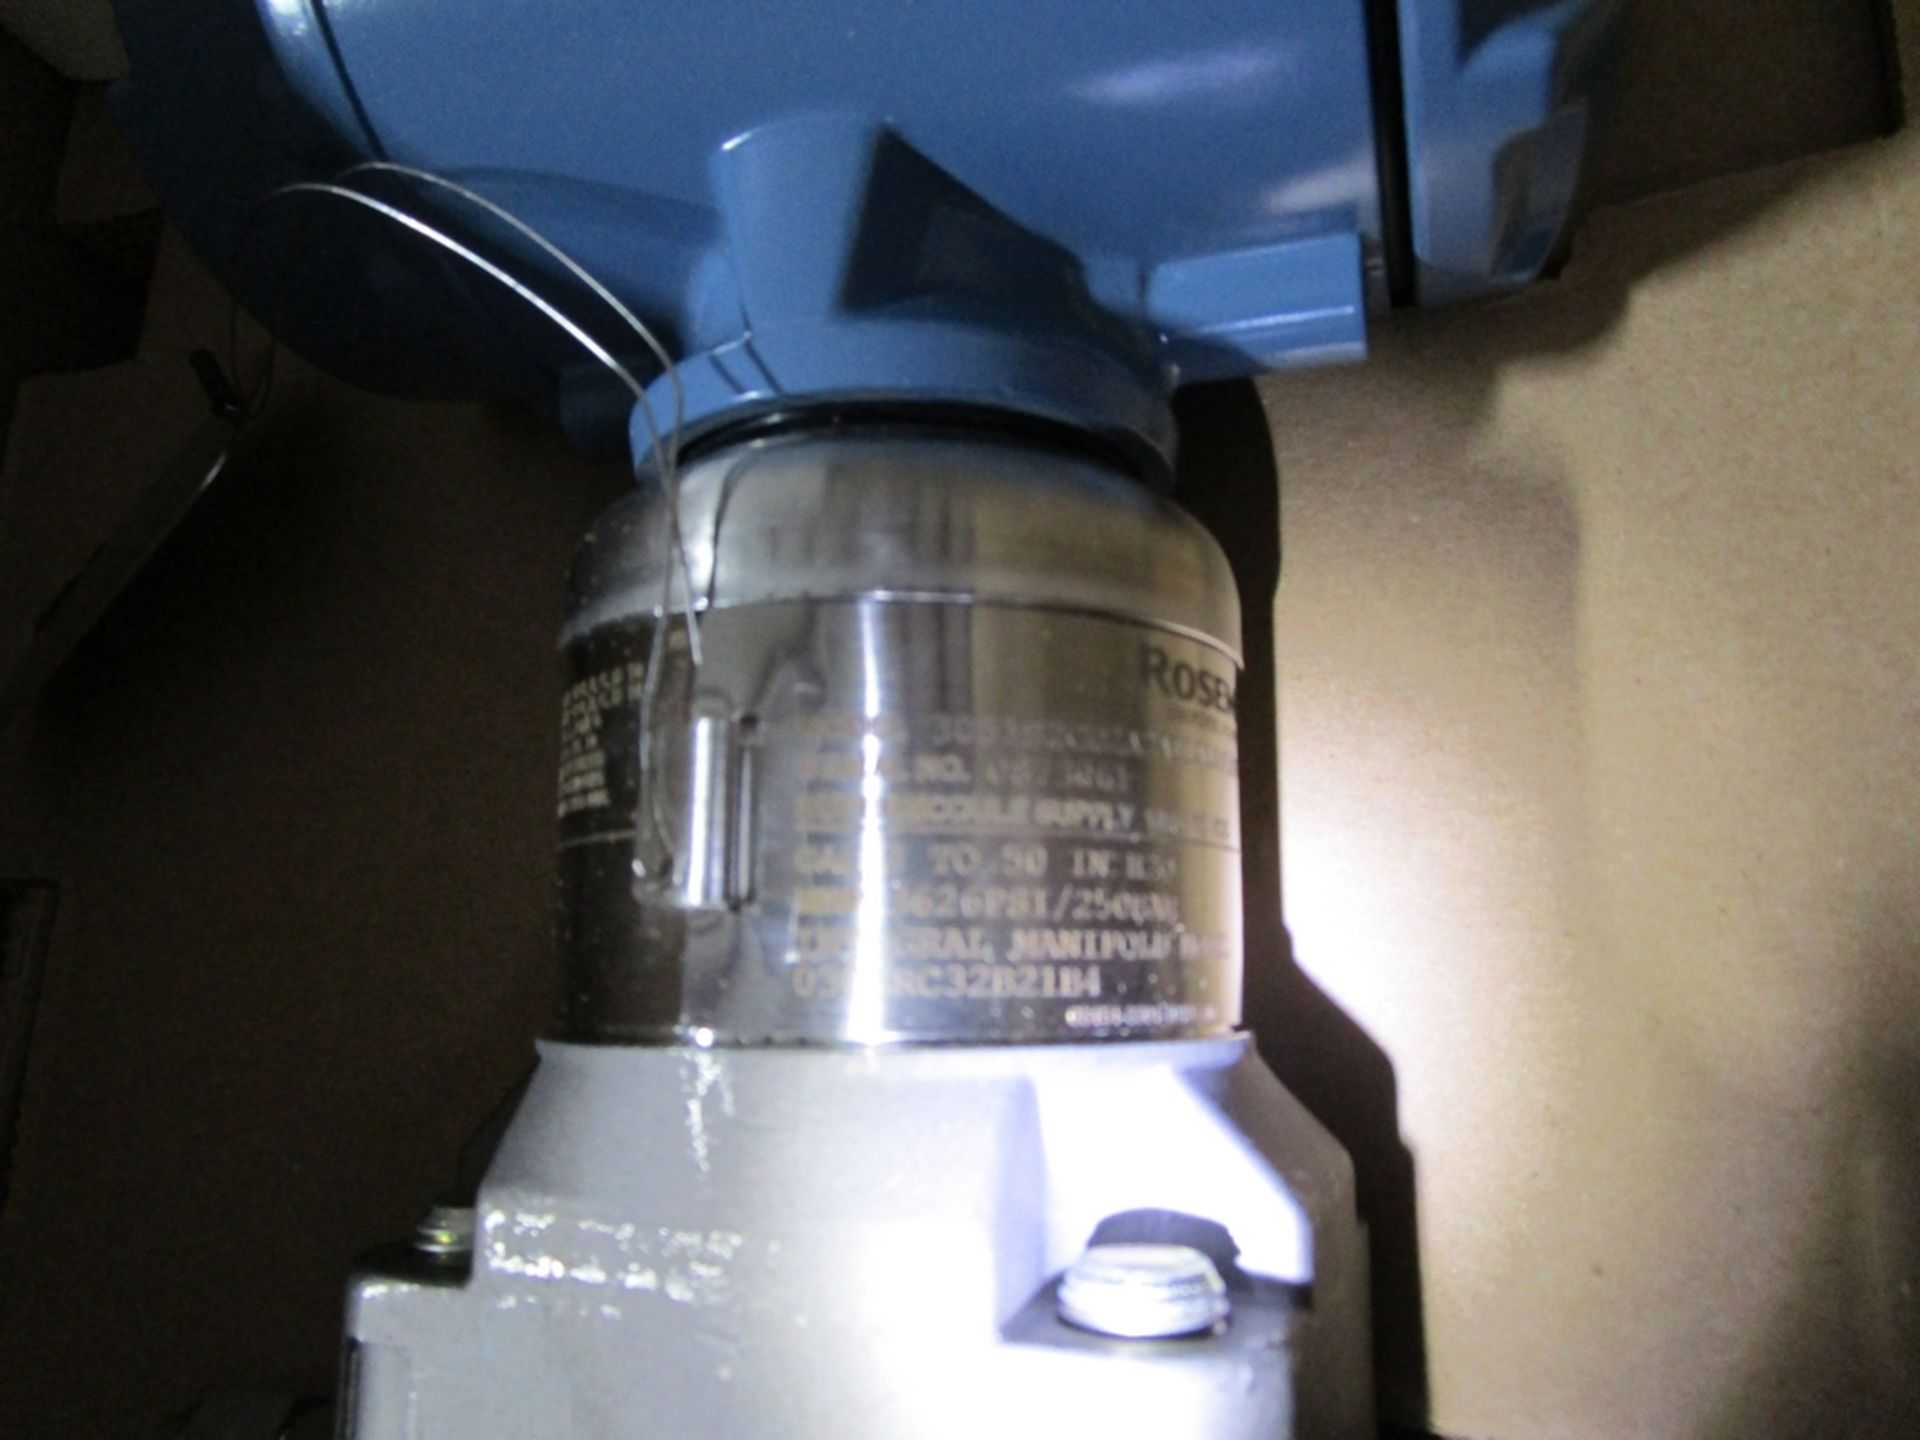 Unused Rosemount 3051 Series Pressure Transmitter With Flowmeter - Image 4 of 5